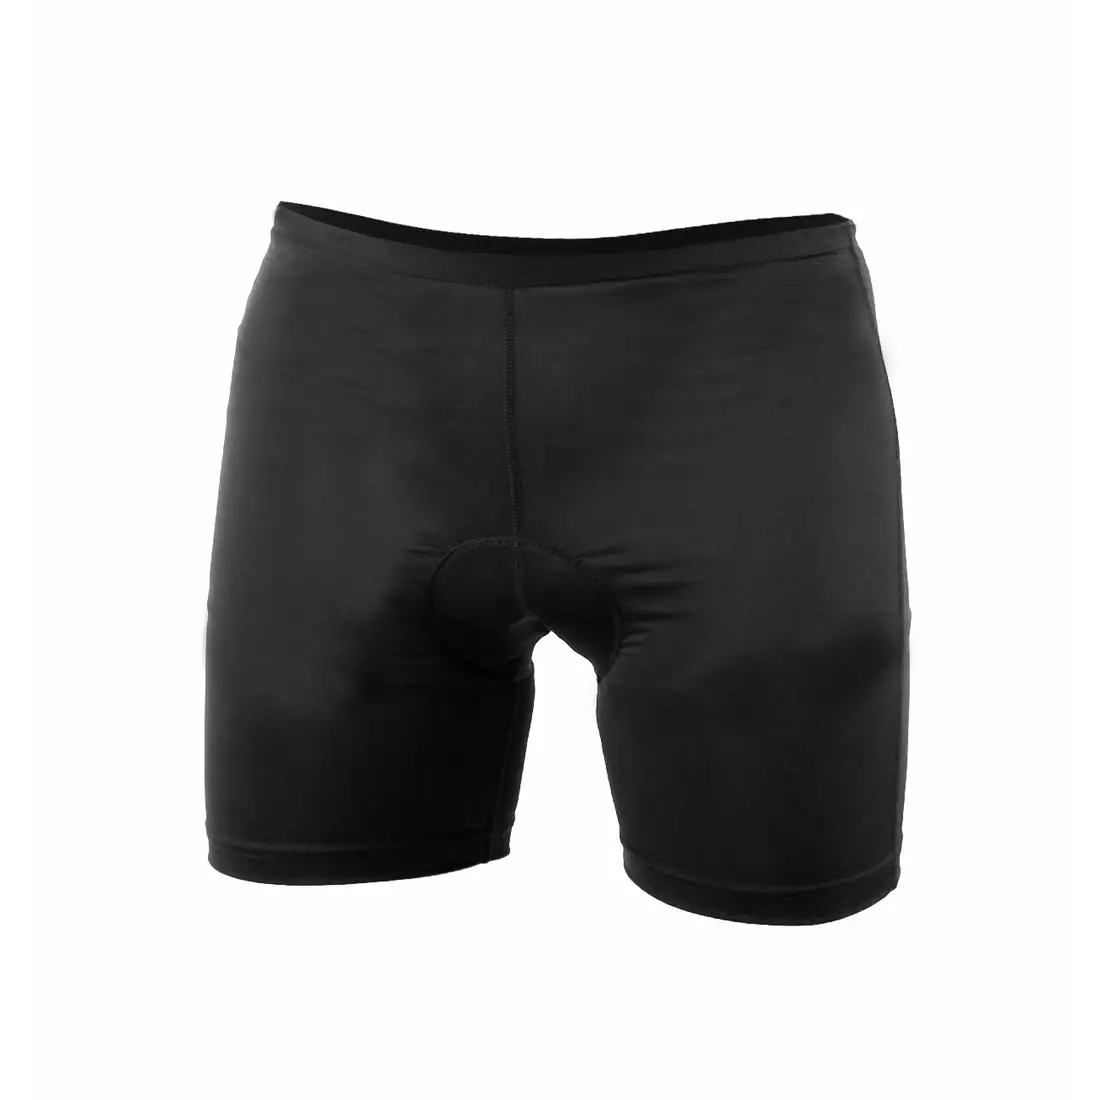 ENDURANCE LEICHHARDT férfi rövidnadrág MTB/ Enduro kerékpár boxerrel, fekete E181374